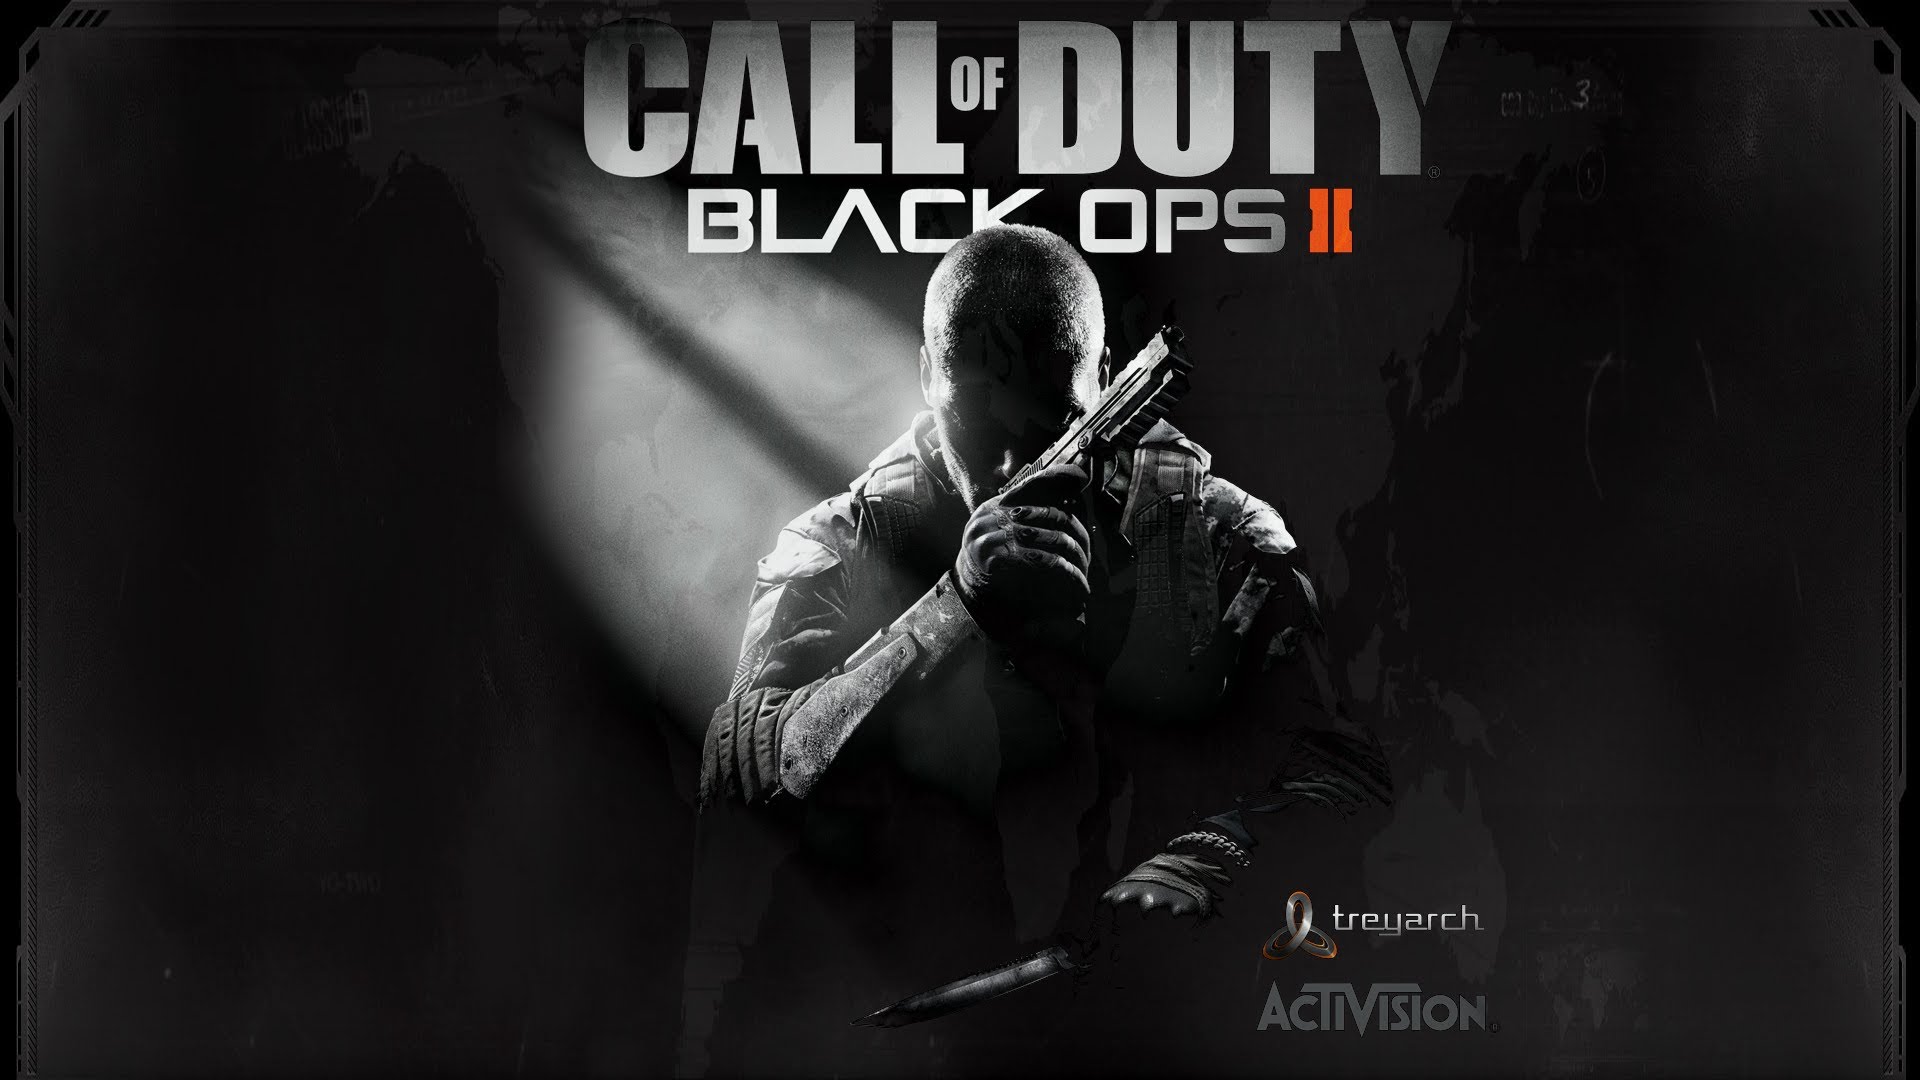 49+] Call of Duty BO2 Wallpapers - WallpaperSafari